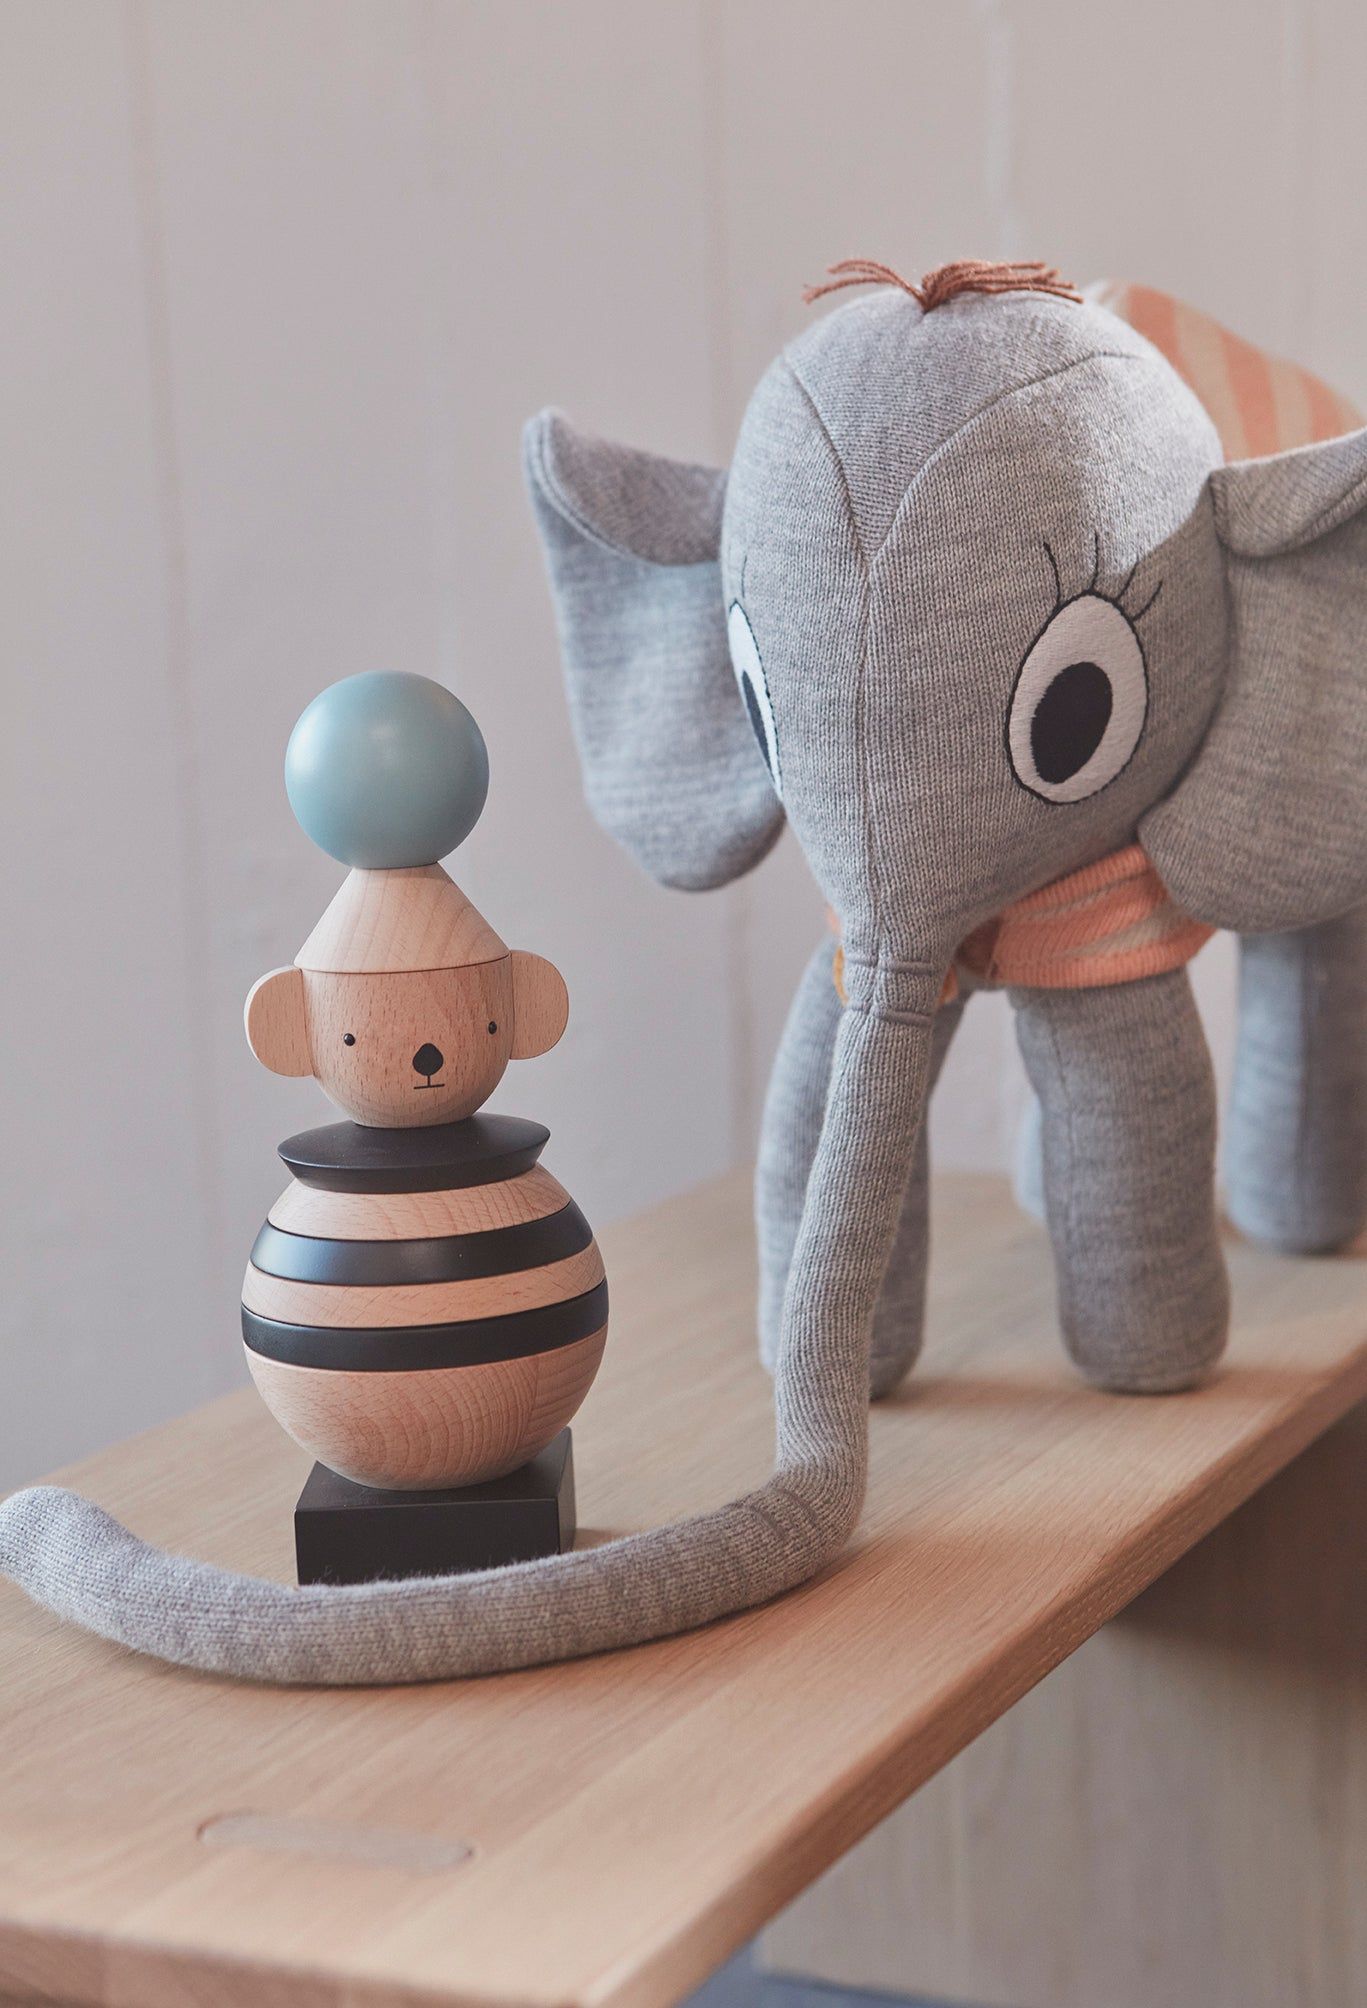 Oyoy Mini Ramboline Elefant - Grau